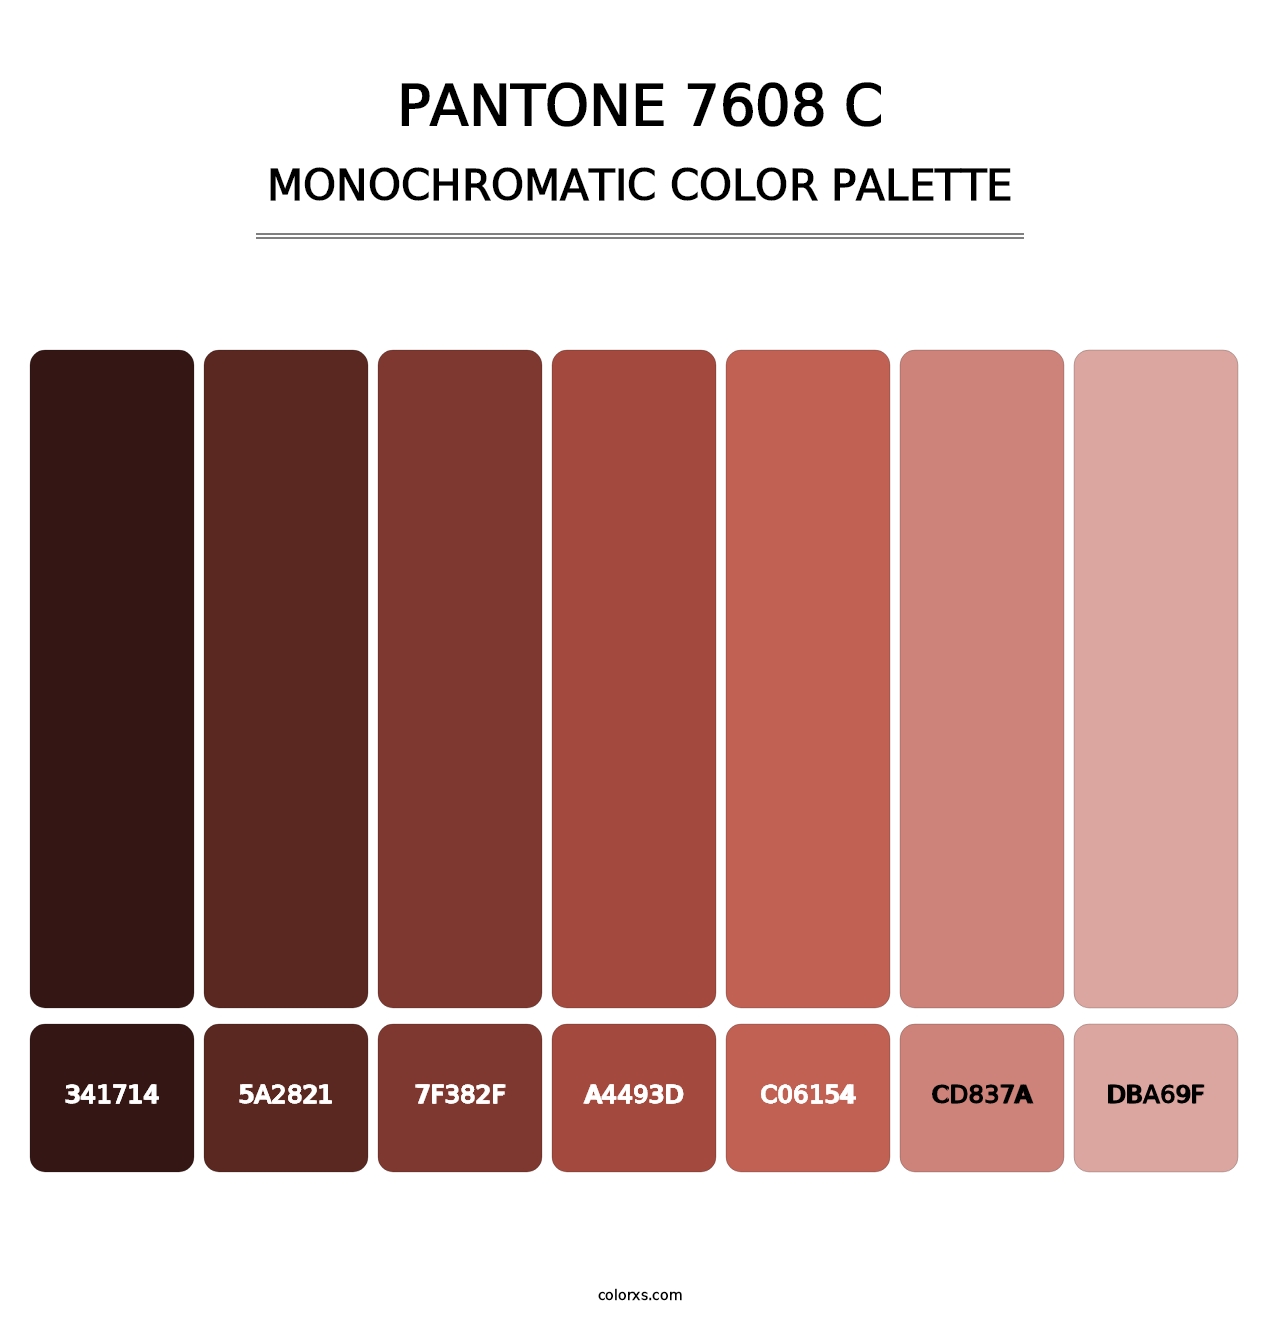 PANTONE 7608 C - Monochromatic Color Palette